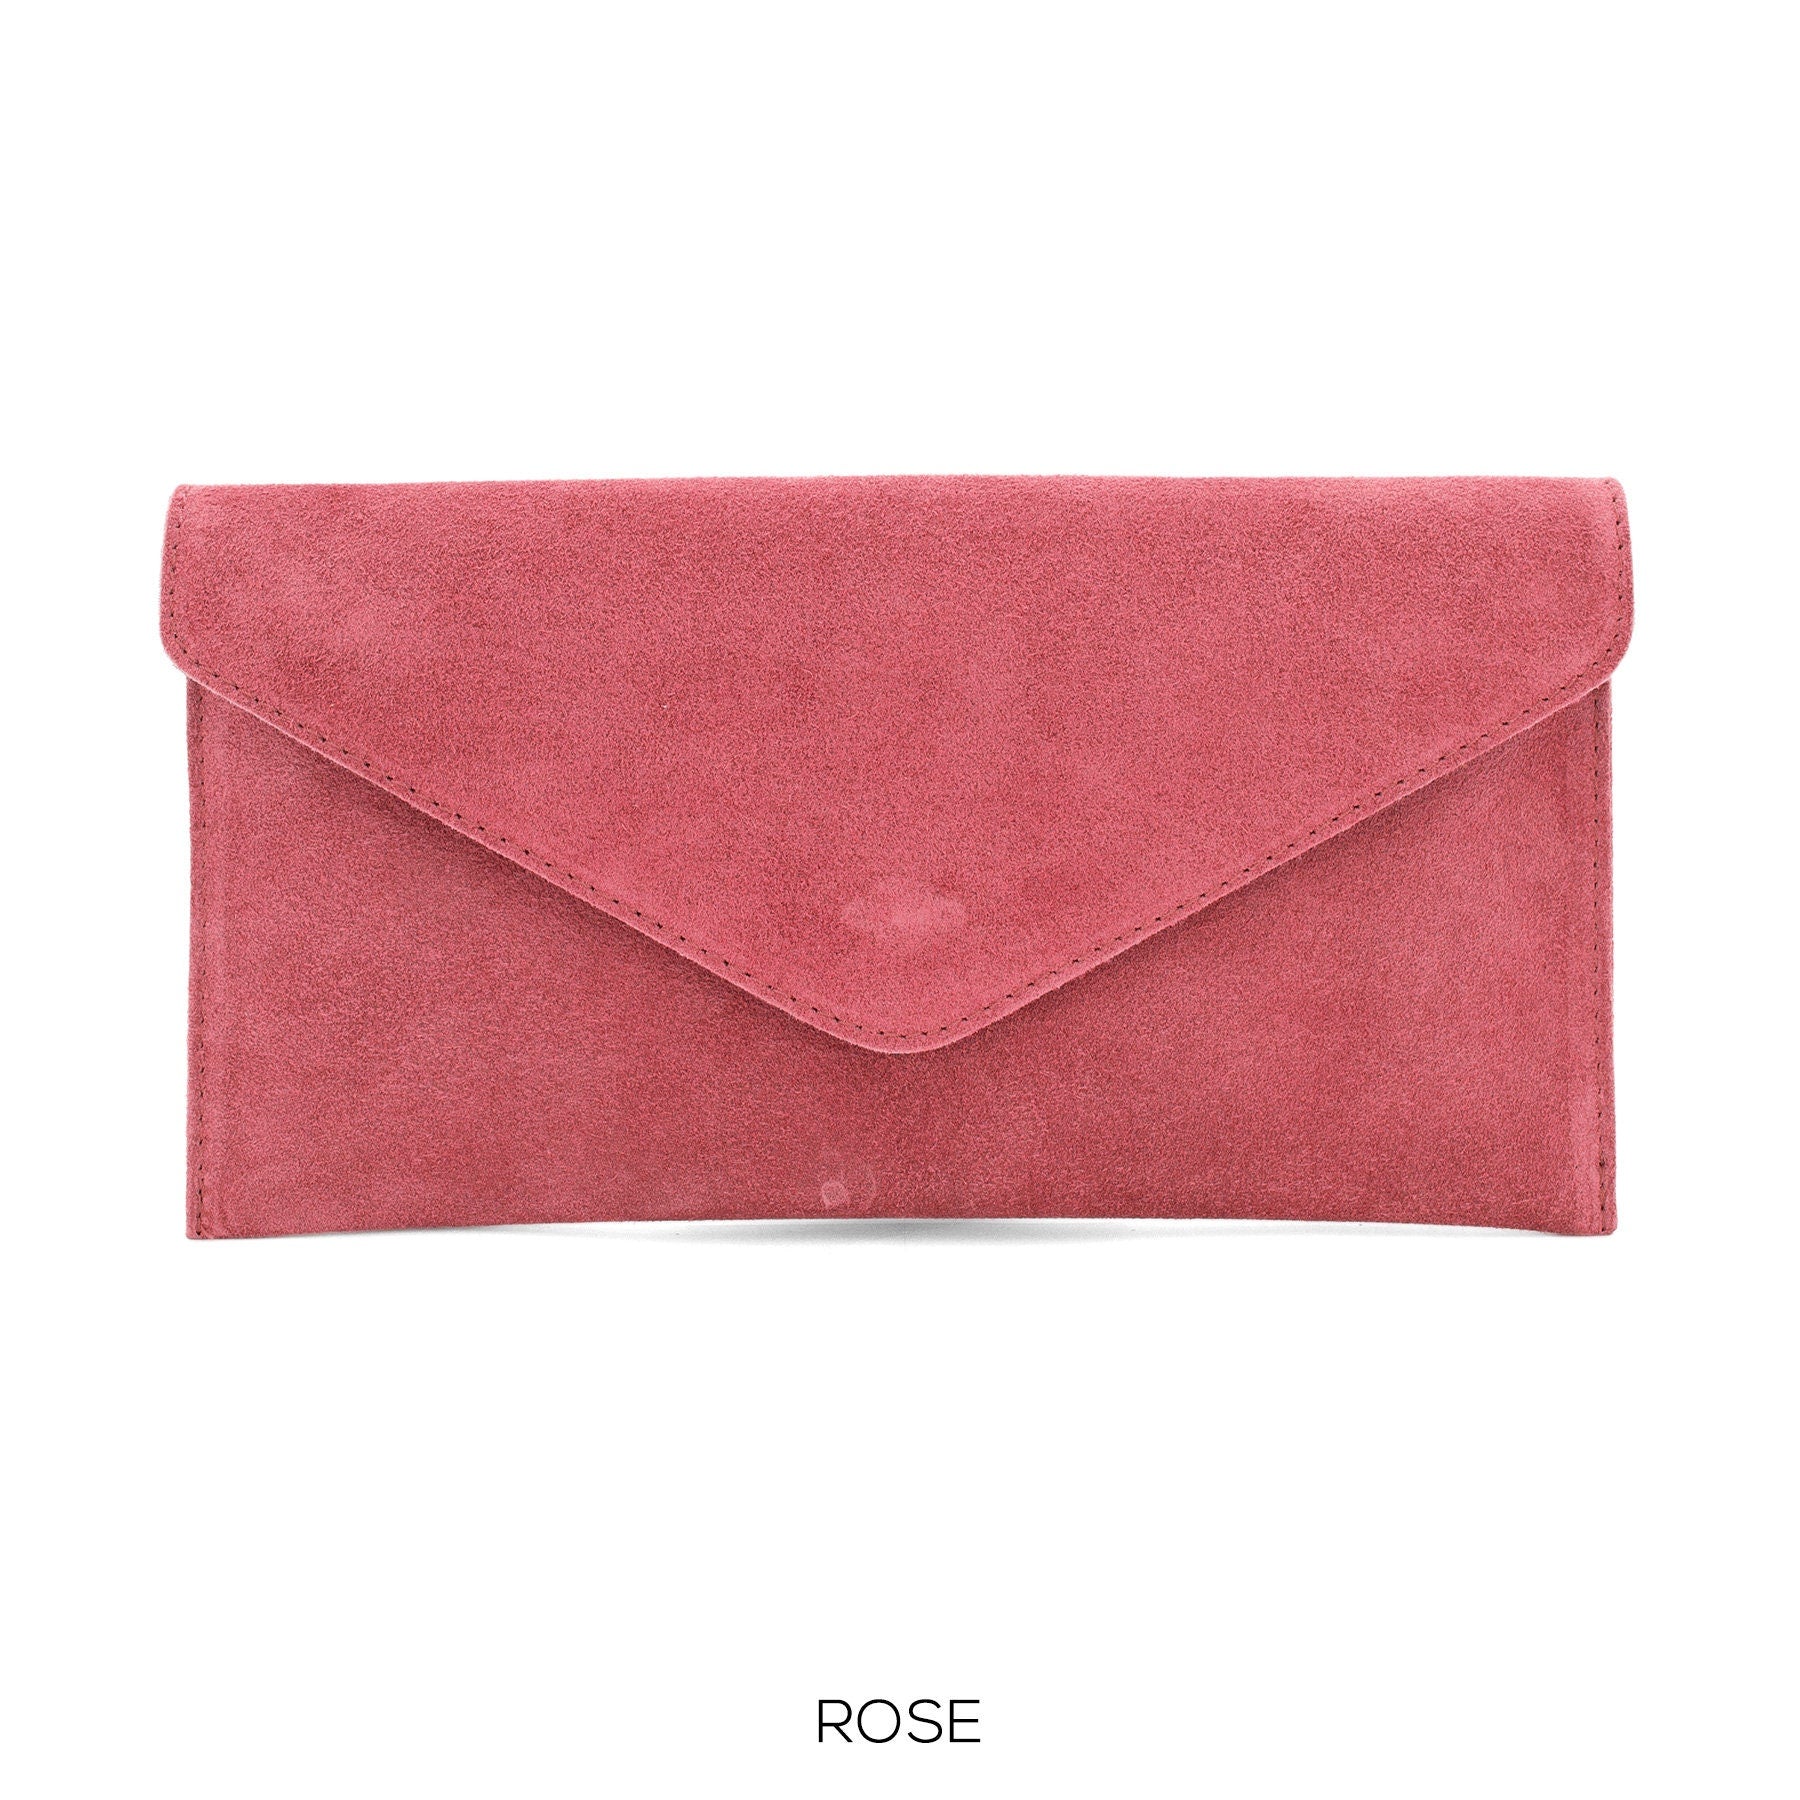 Coral Rose envelope clutch bag